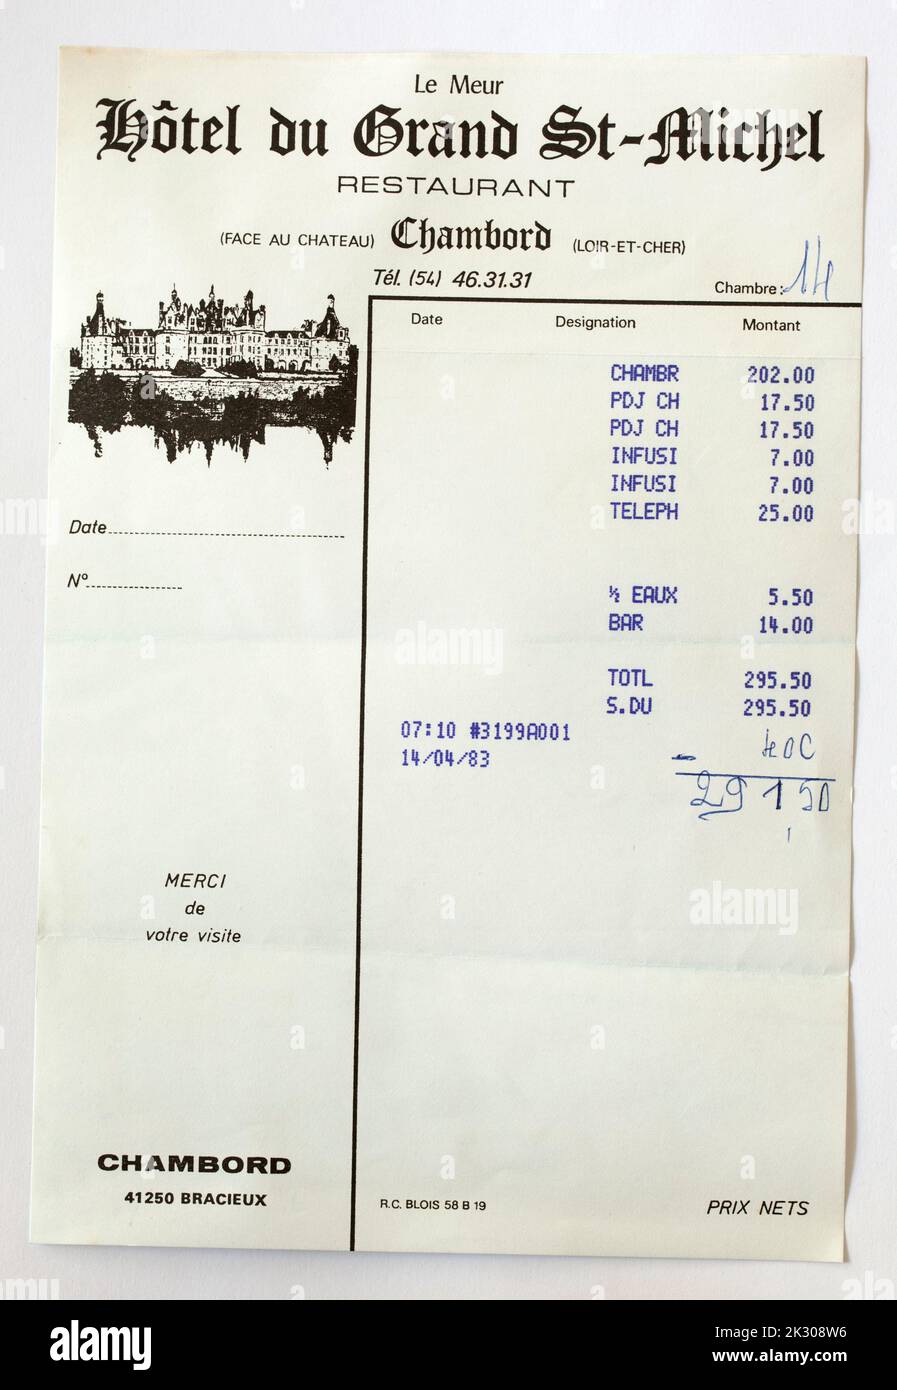 Alte 1980er Jahre Kunden französische Hotelrechnung Stockfoto